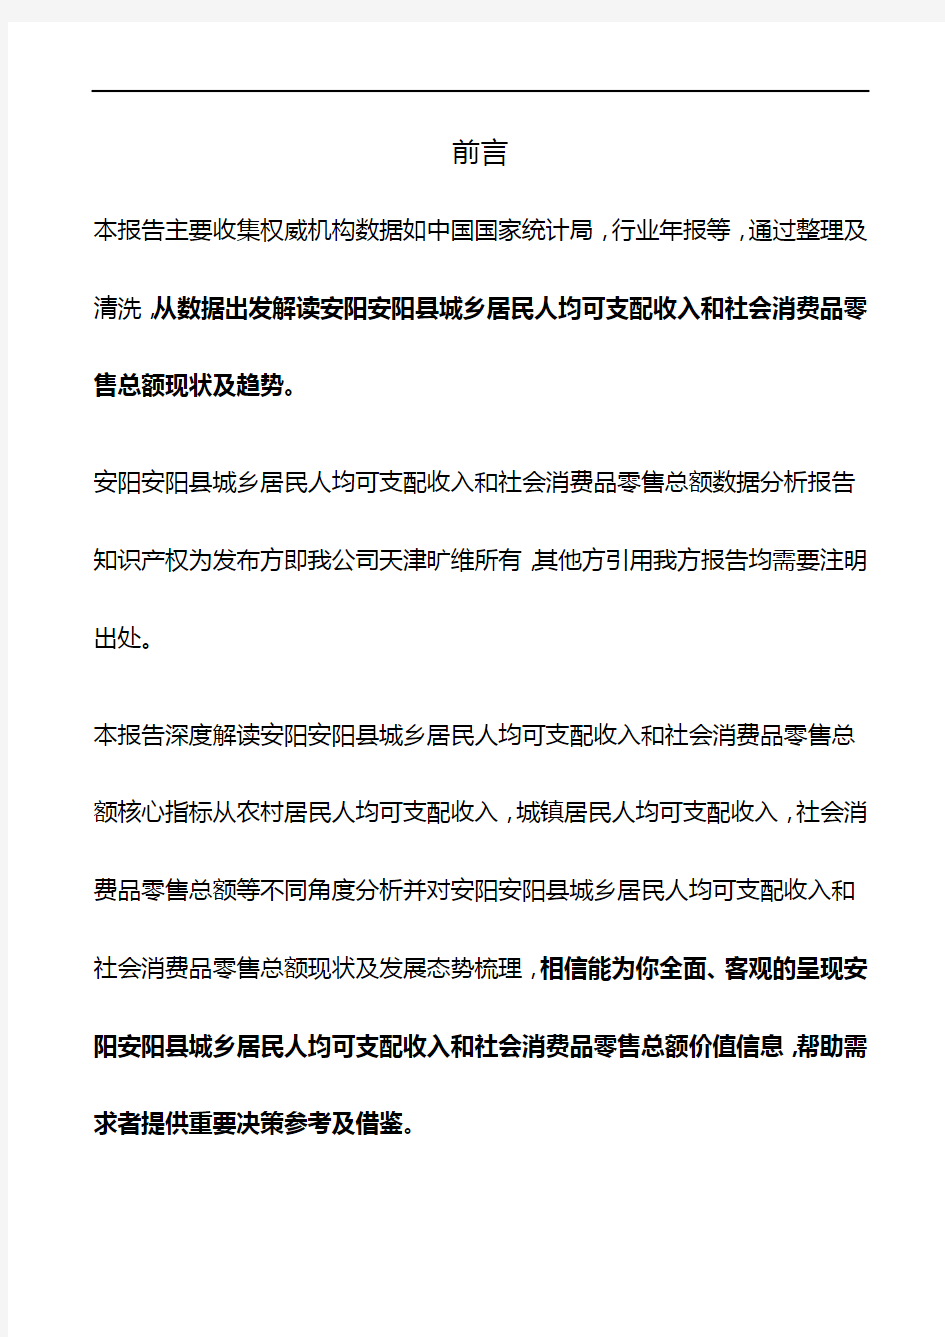 河南省安阳安阳县城乡居民人均可支配收入和社会消费品零售总额数据分析报告2019版